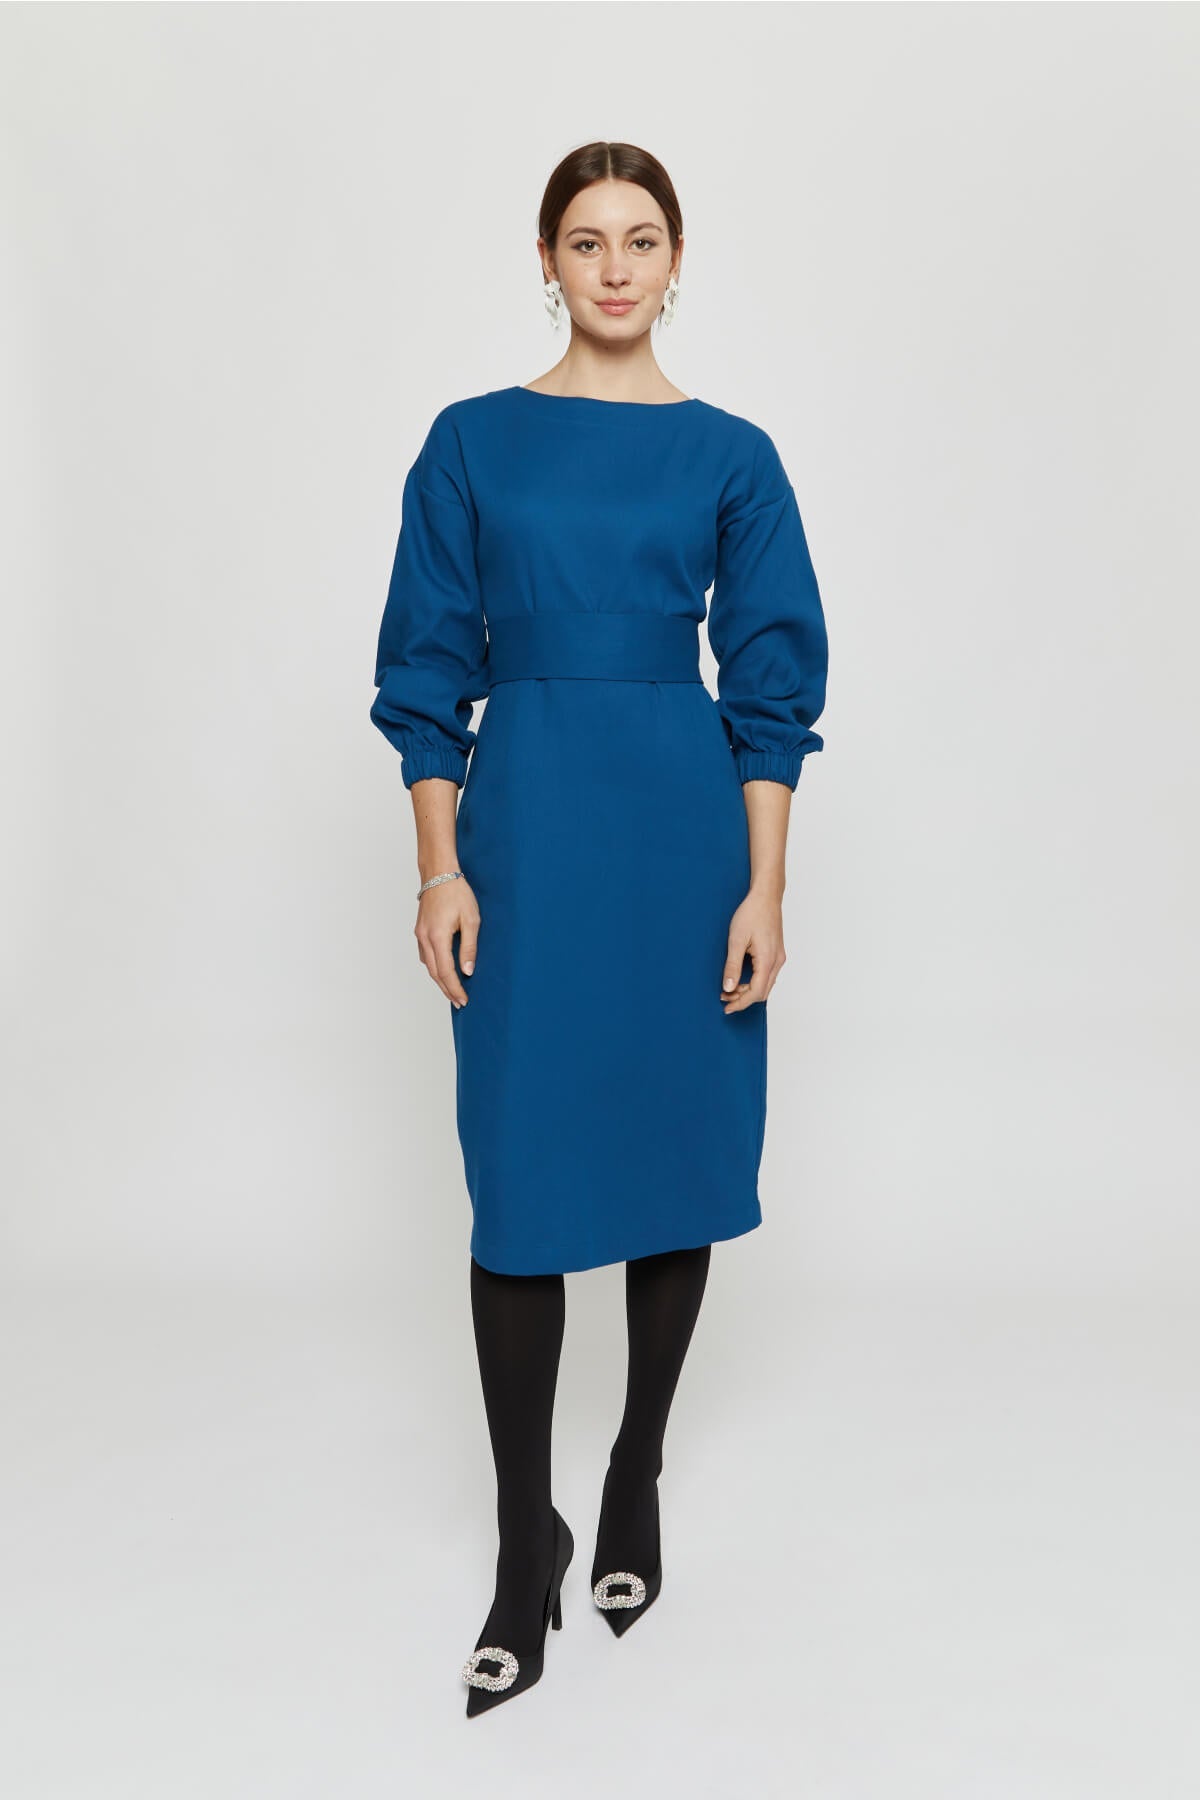 Blaues, langärmliges Kleid Stefanie aus 100% Bio-Baumwolle von Ayani